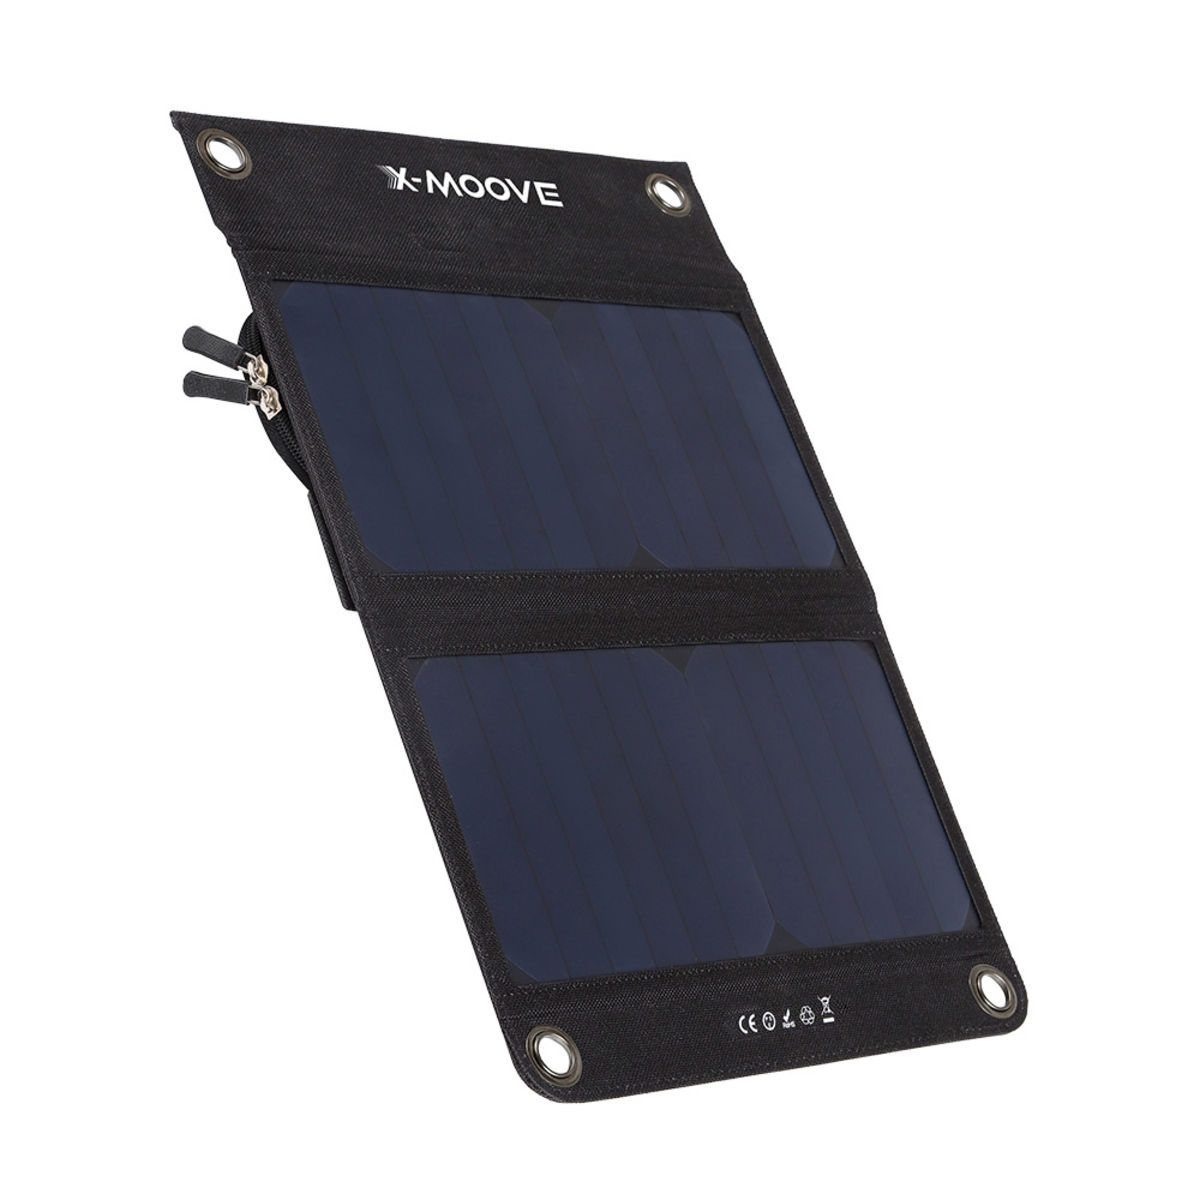 Batterie externe solaire X-Moove Solargo Pocket PowerBank 15000 mAh - Batterie  externe